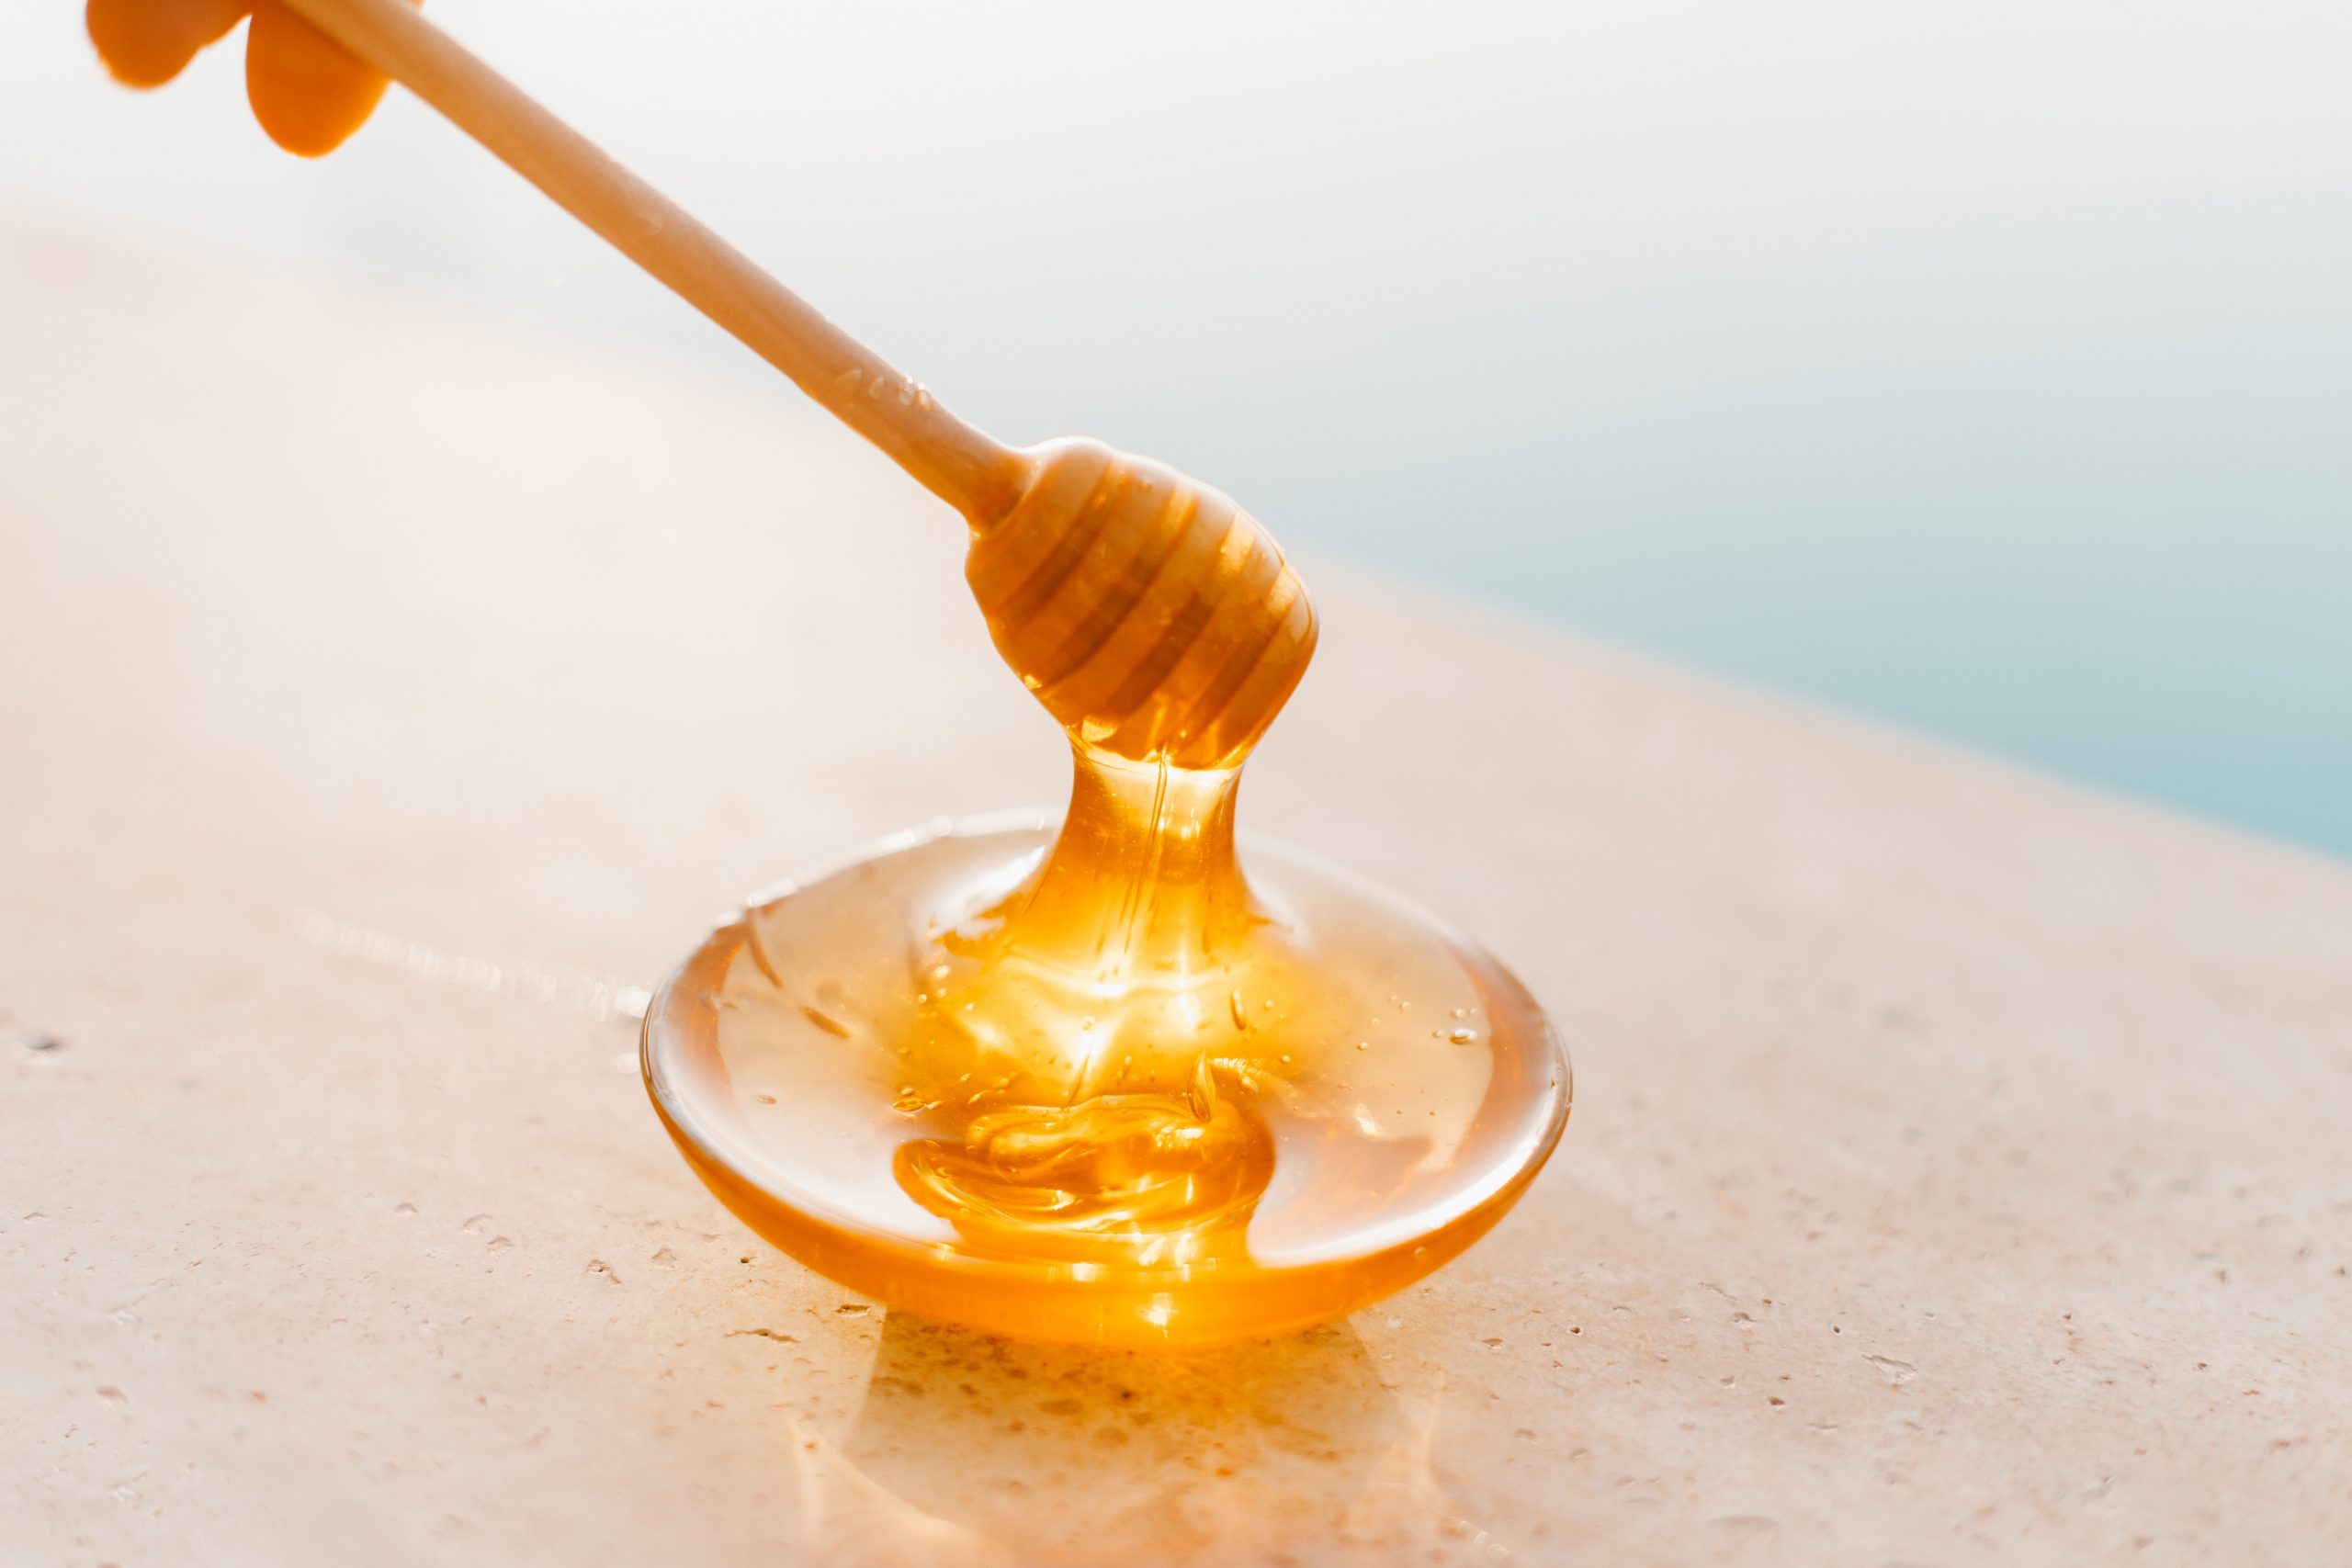 فوائد الحبة السوداء مع العسل للمناعة ومقاومة البرد وتقلبات الجو